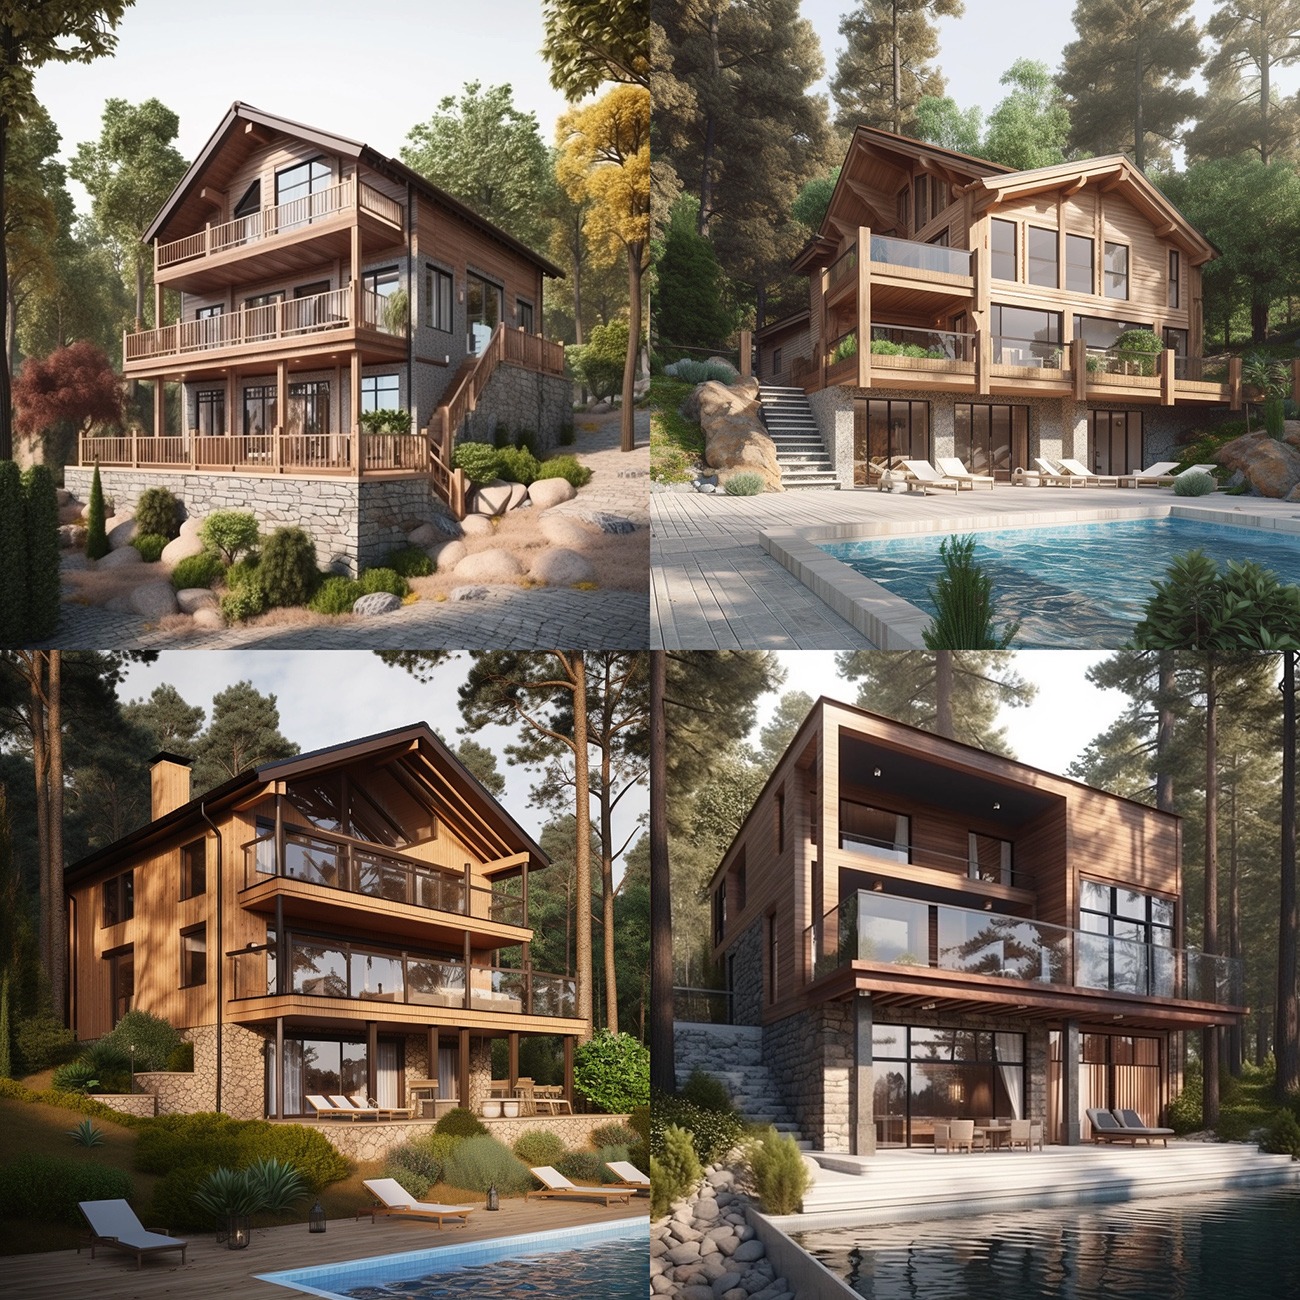 Еще несколько сгенерированных изображений по запросу "Большой современный экологичный дом в лесу у воды". Впечатляет, не правда ли?